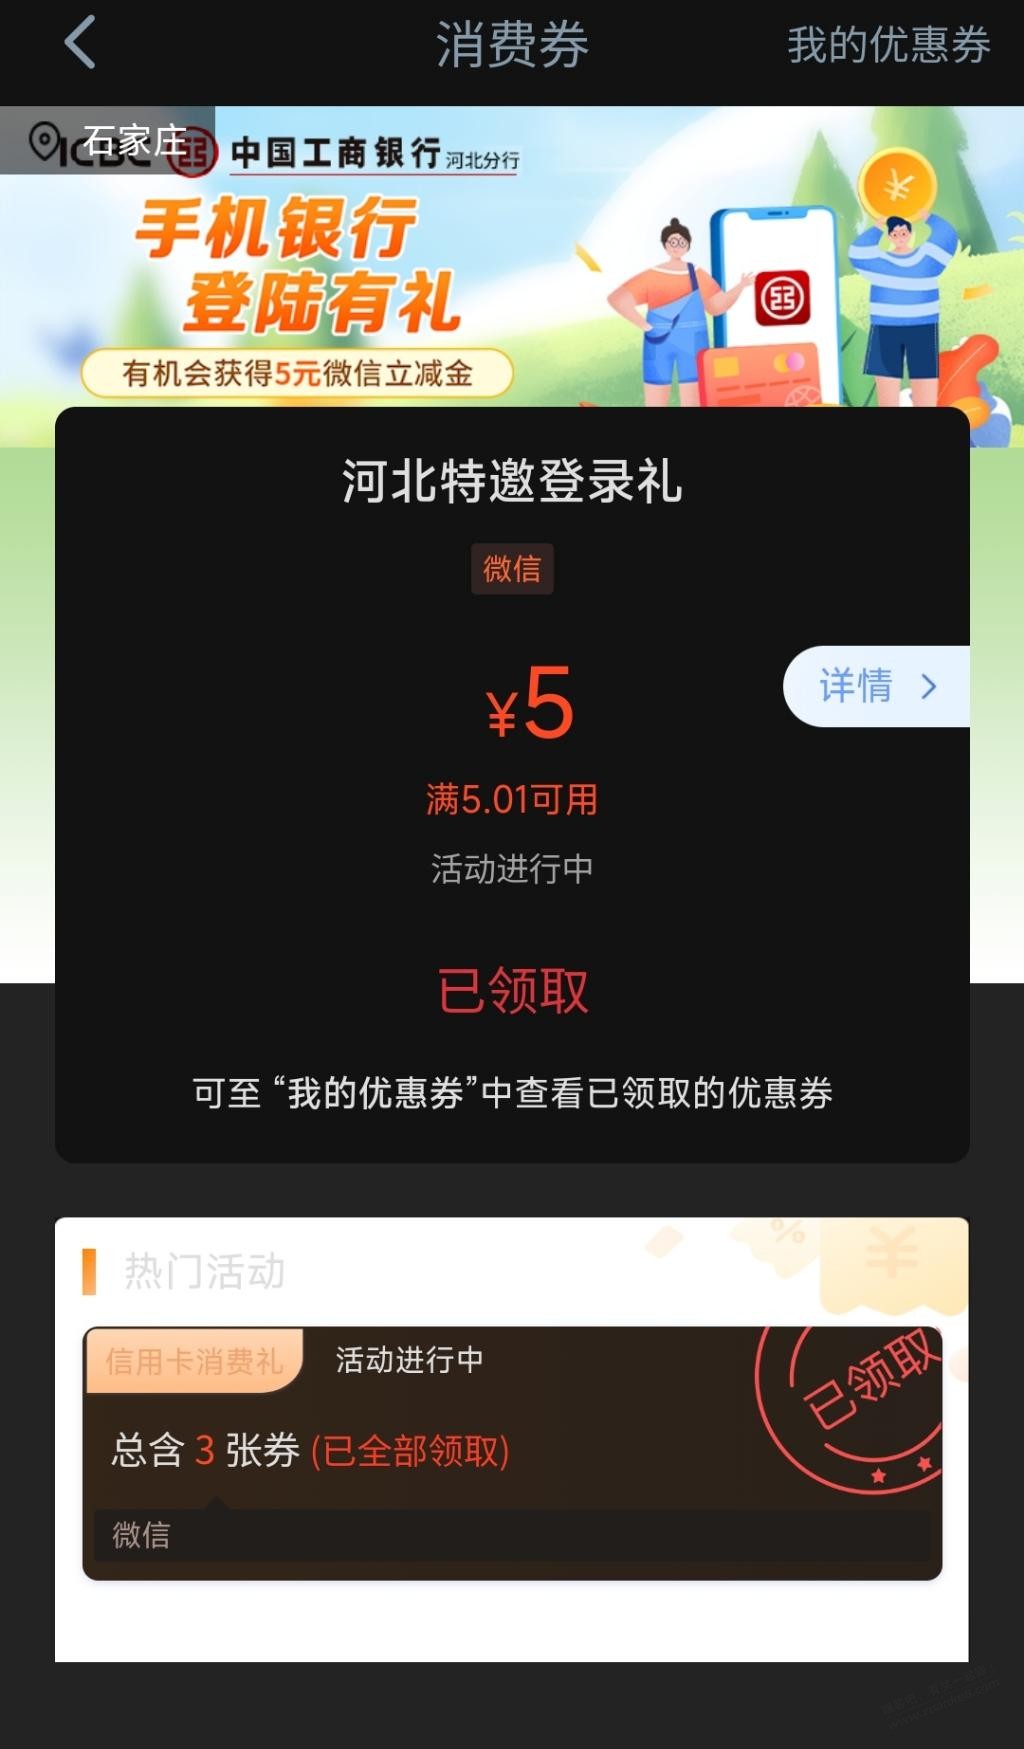 河北工行用户领5元V.x立减金-惠小助(52huixz.com)